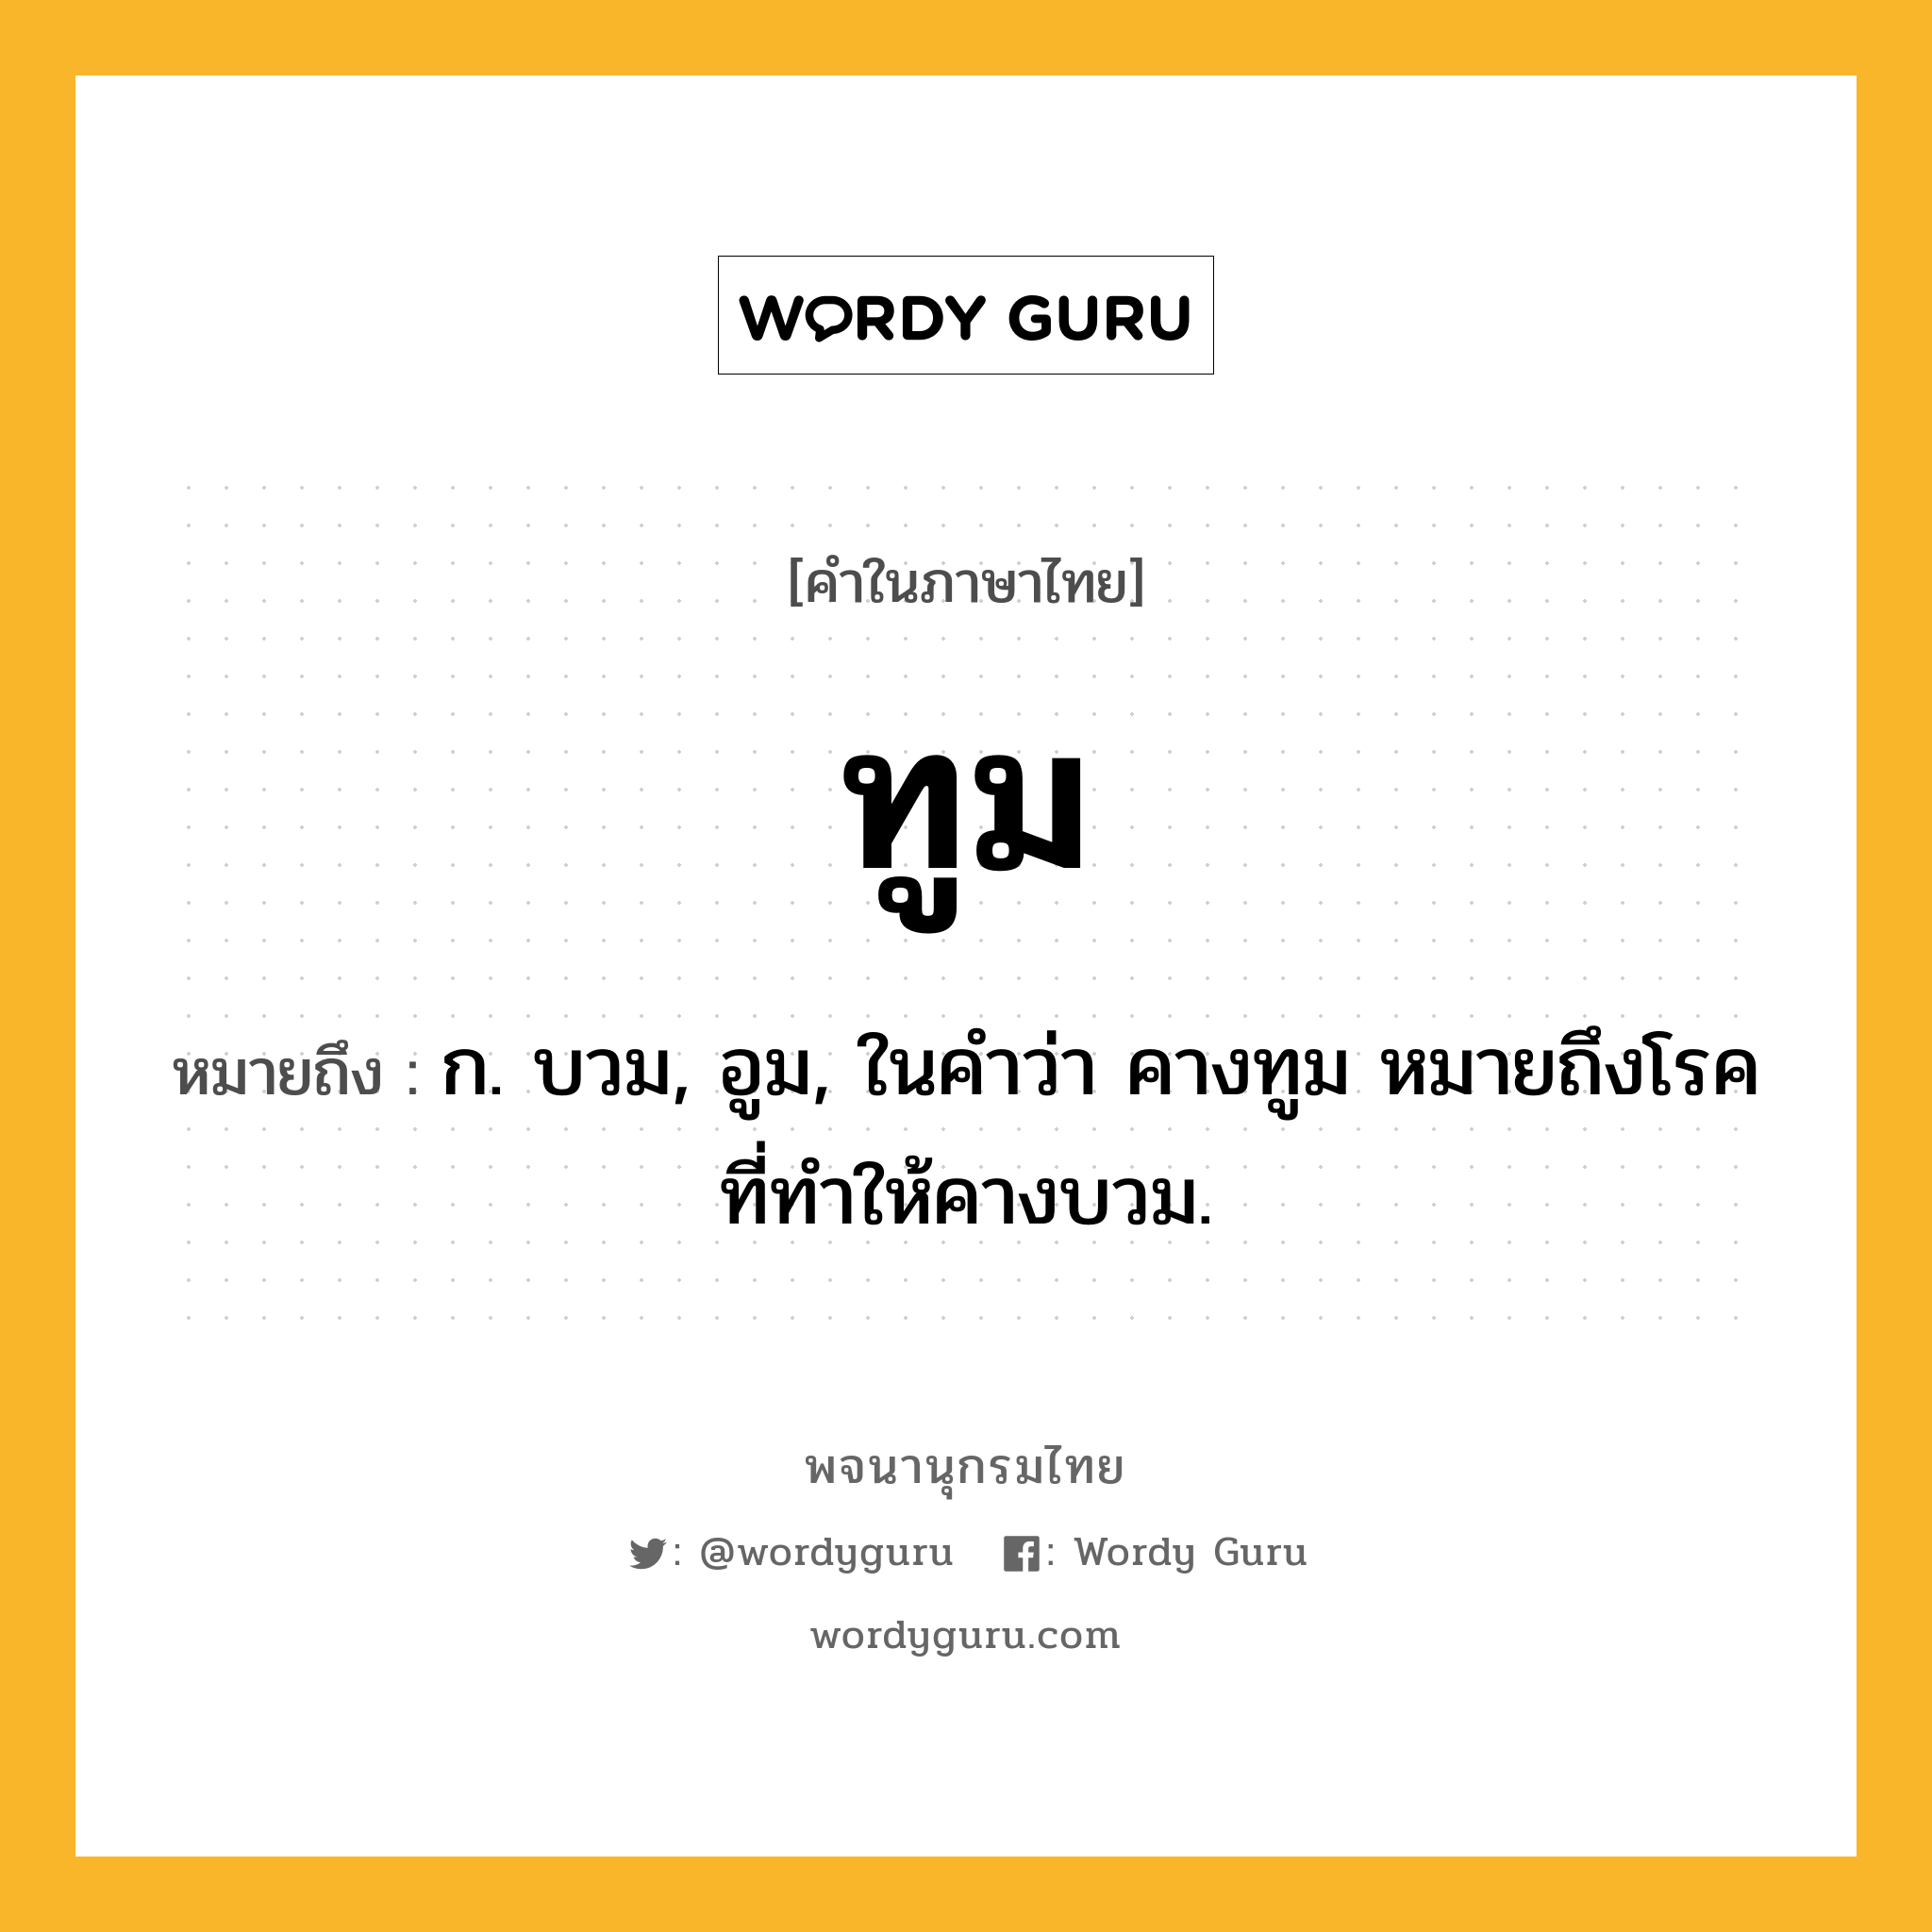 ทูม ความหมาย หมายถึงอะไร?, คำในภาษาไทย ทูม หมายถึง ก. บวม, อูม, ในคําว่า คางทูม หมายถึงโรคที่ทําให้คางบวม.